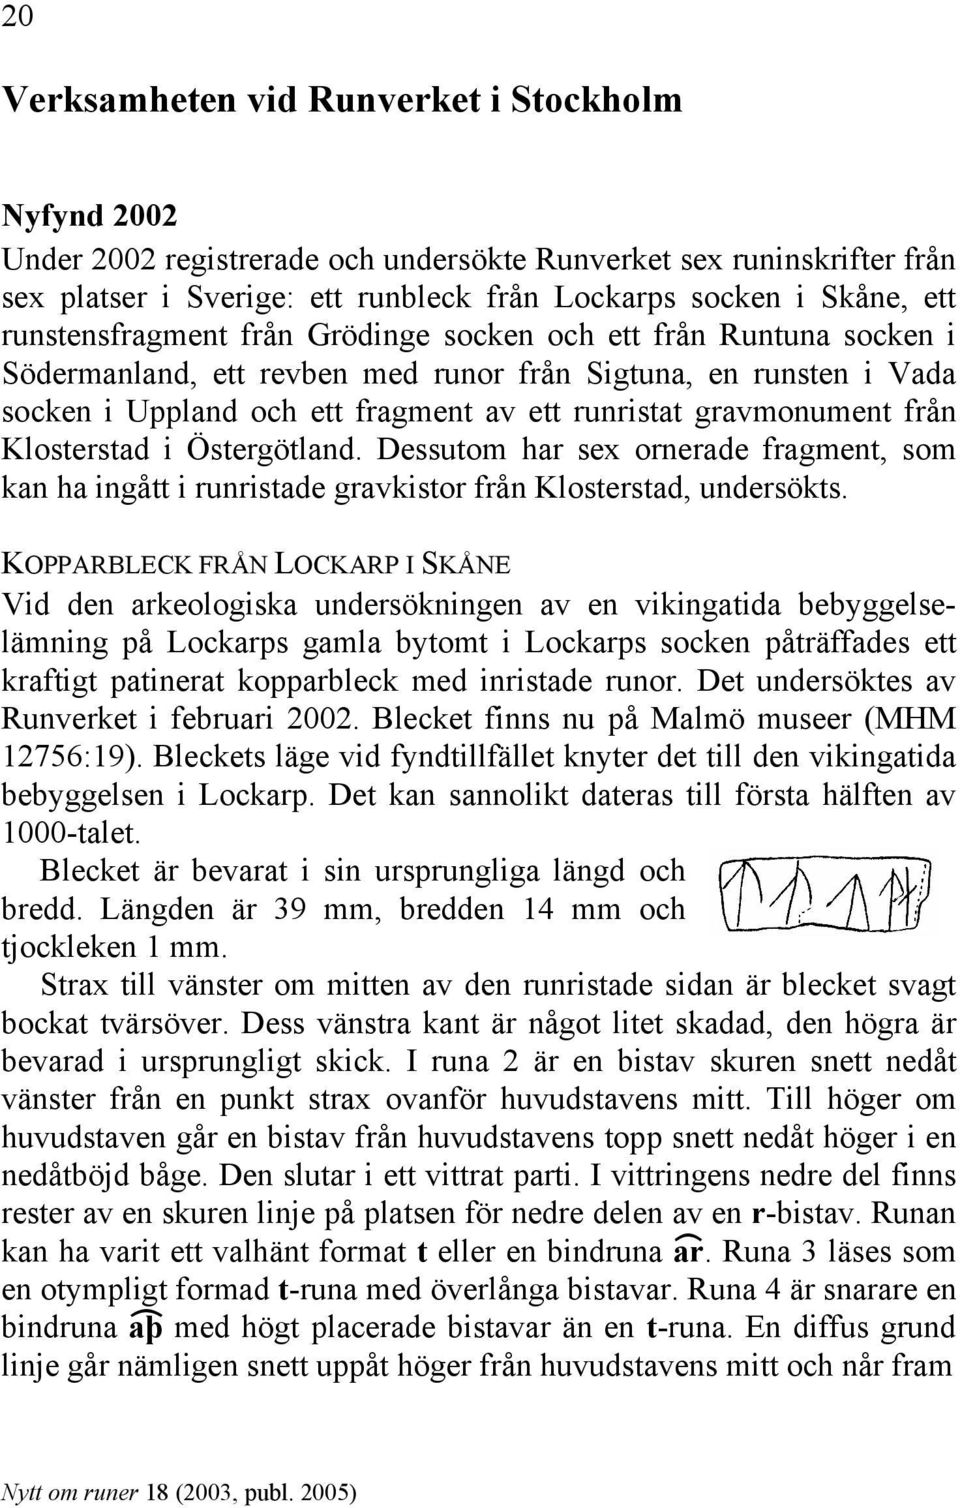 från Klosterstad i Östergötland. Dessutom har sex ornerade fragment, som kan ha ingått i runristade gravkistor från Klosterstad, undersökts.